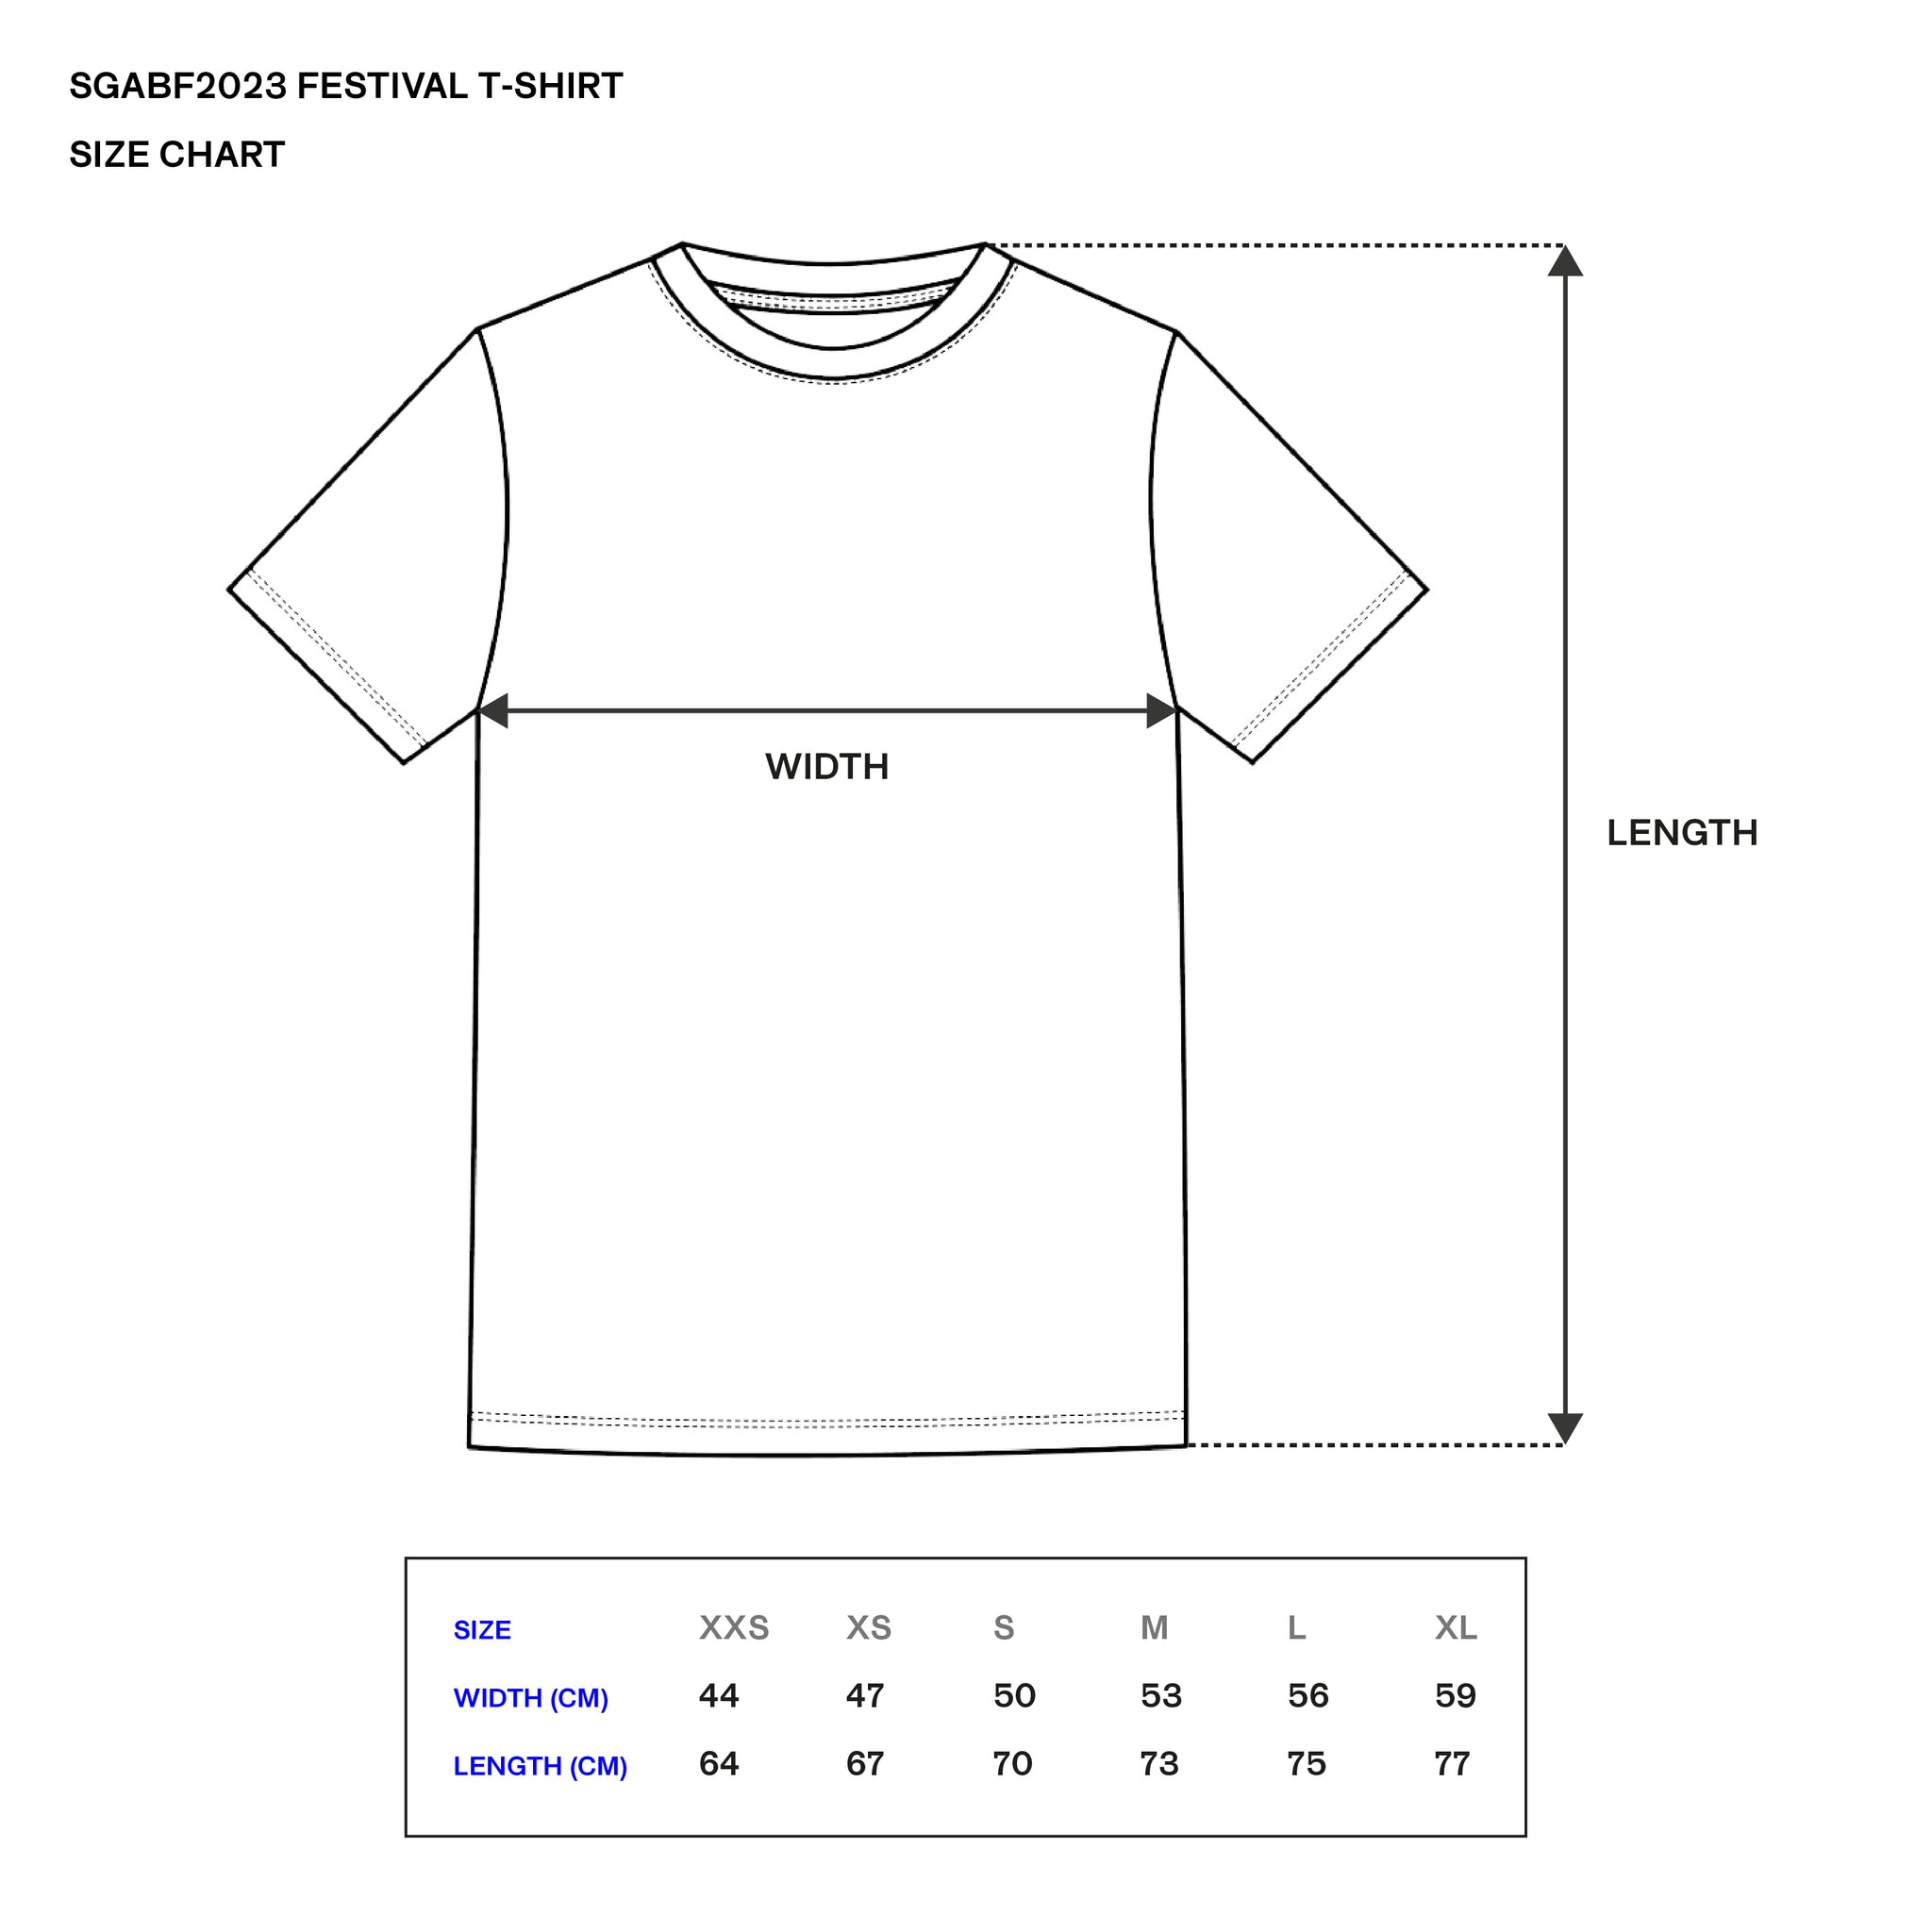 SGABF Festival T-shirt